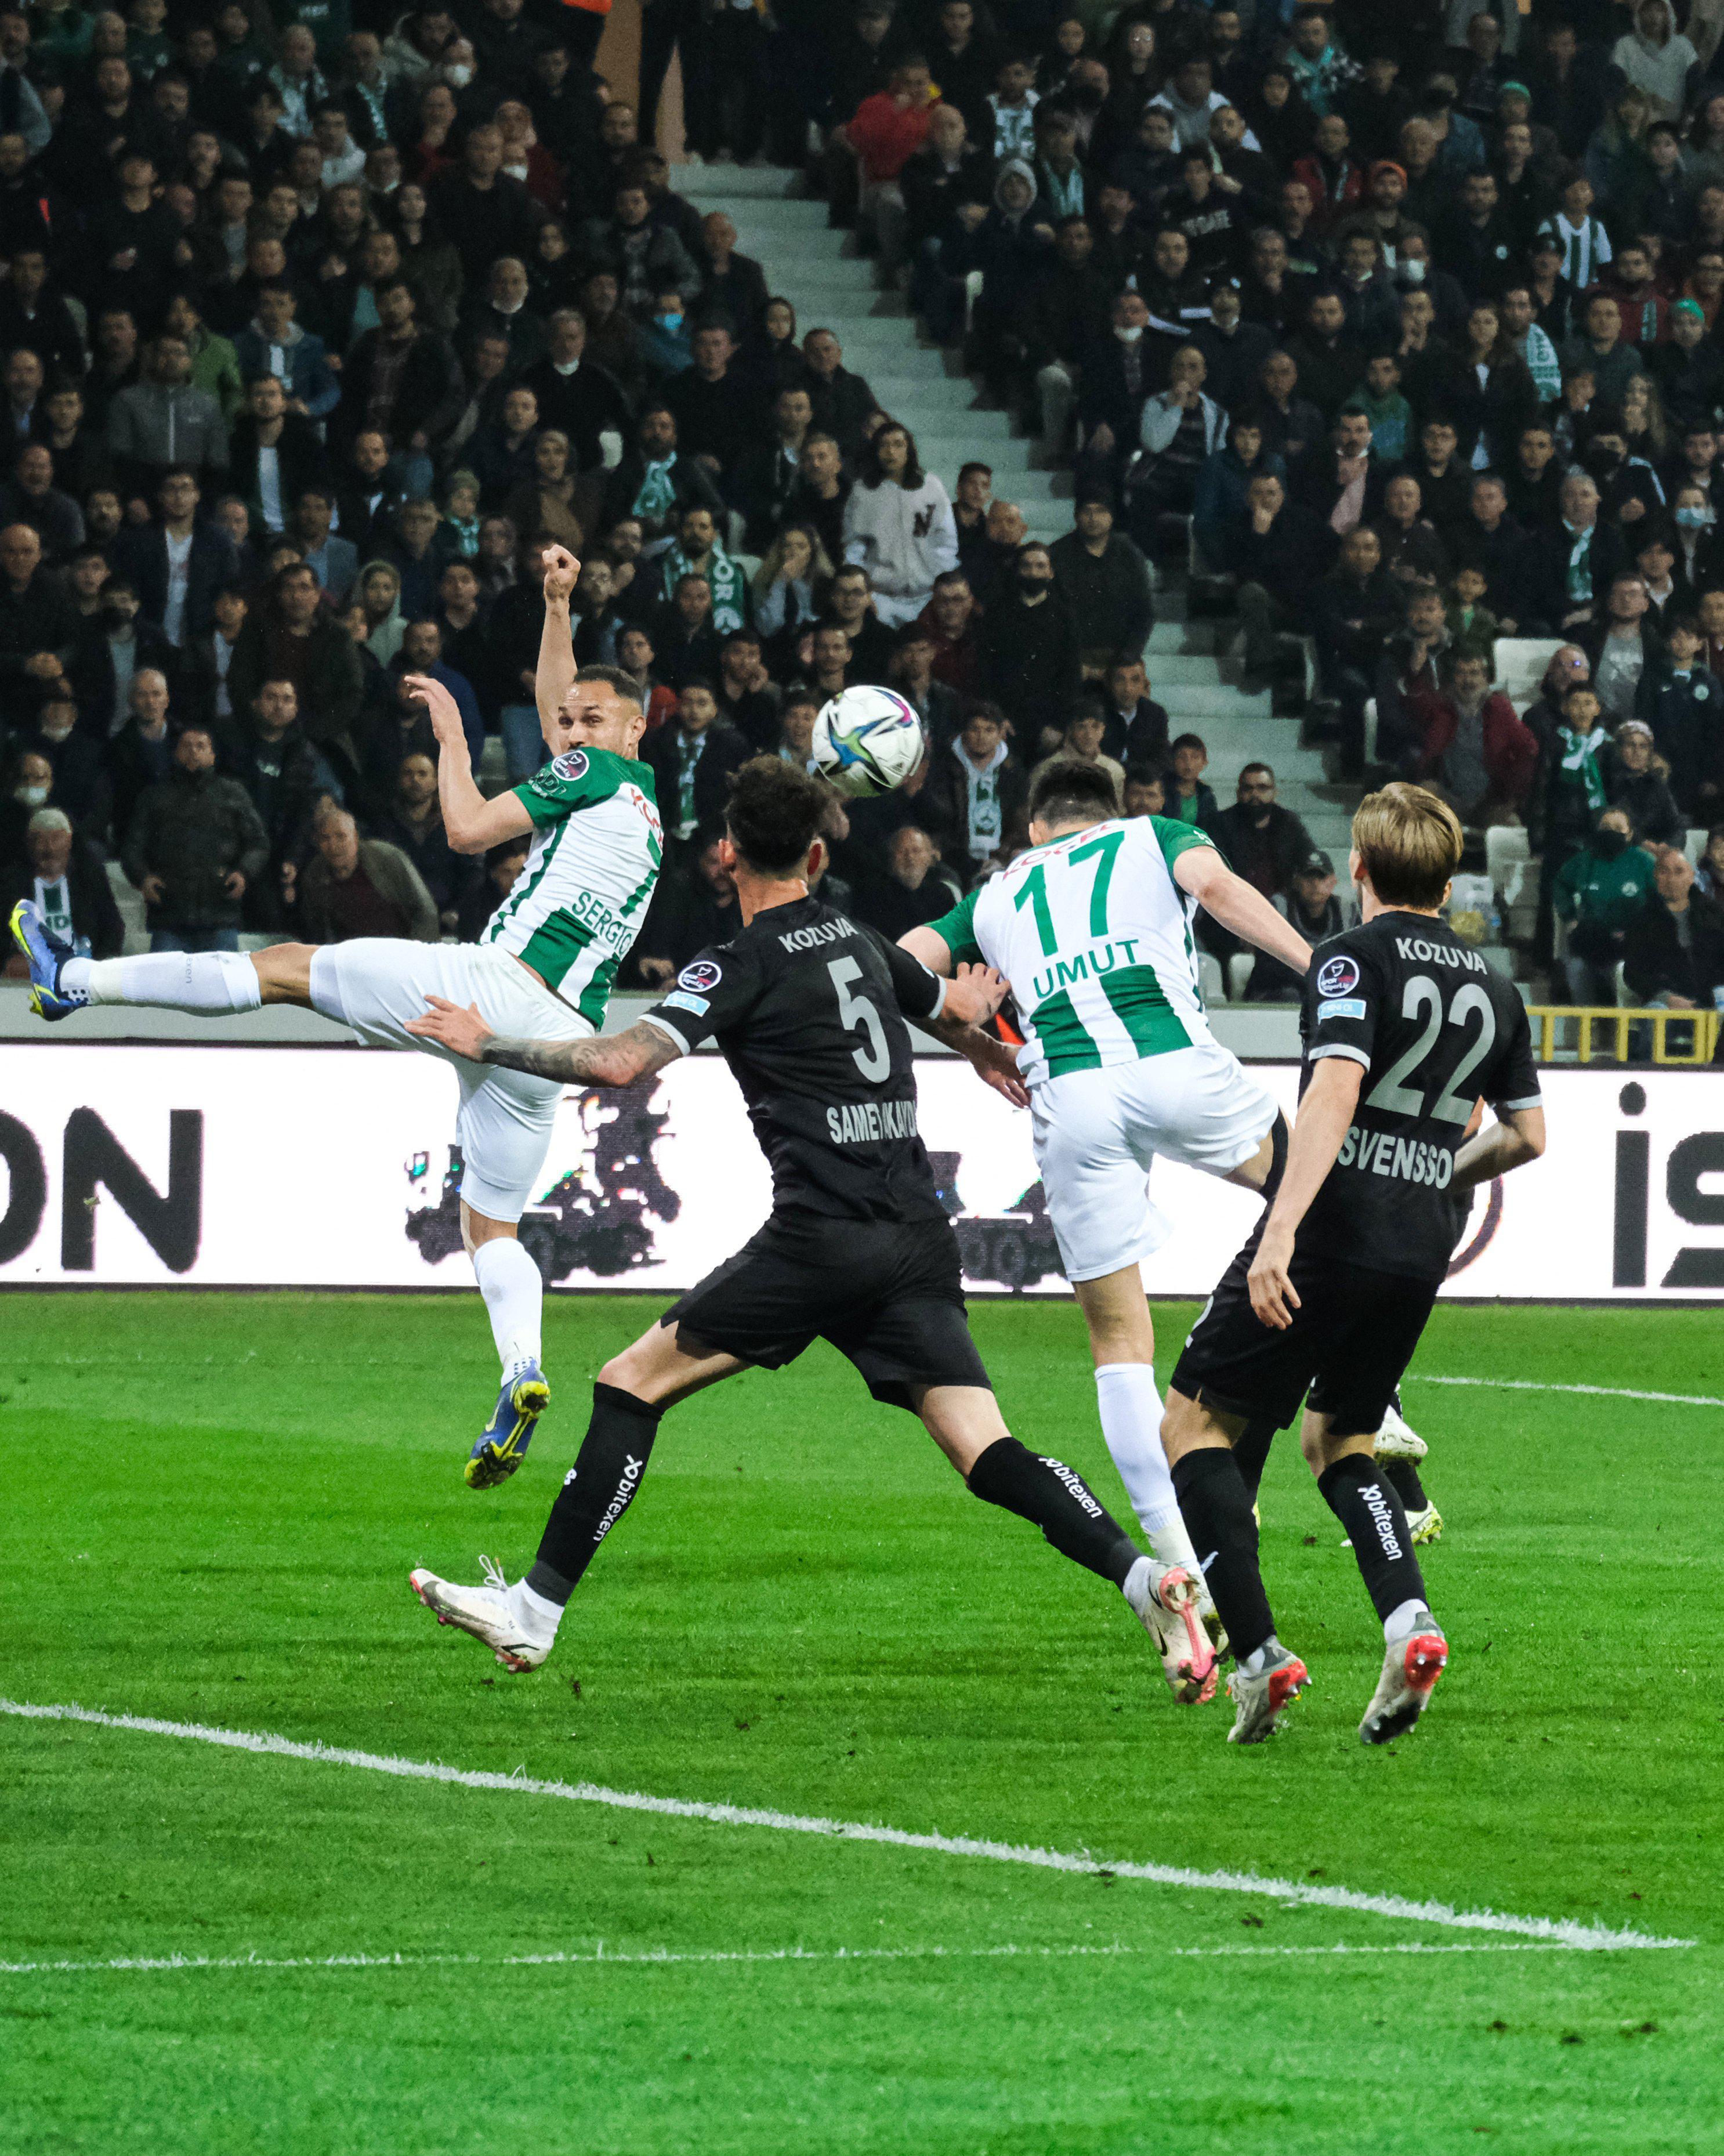 (ÖZET) Giresunspor - Adana Demirspor maç sonucu: 2-0